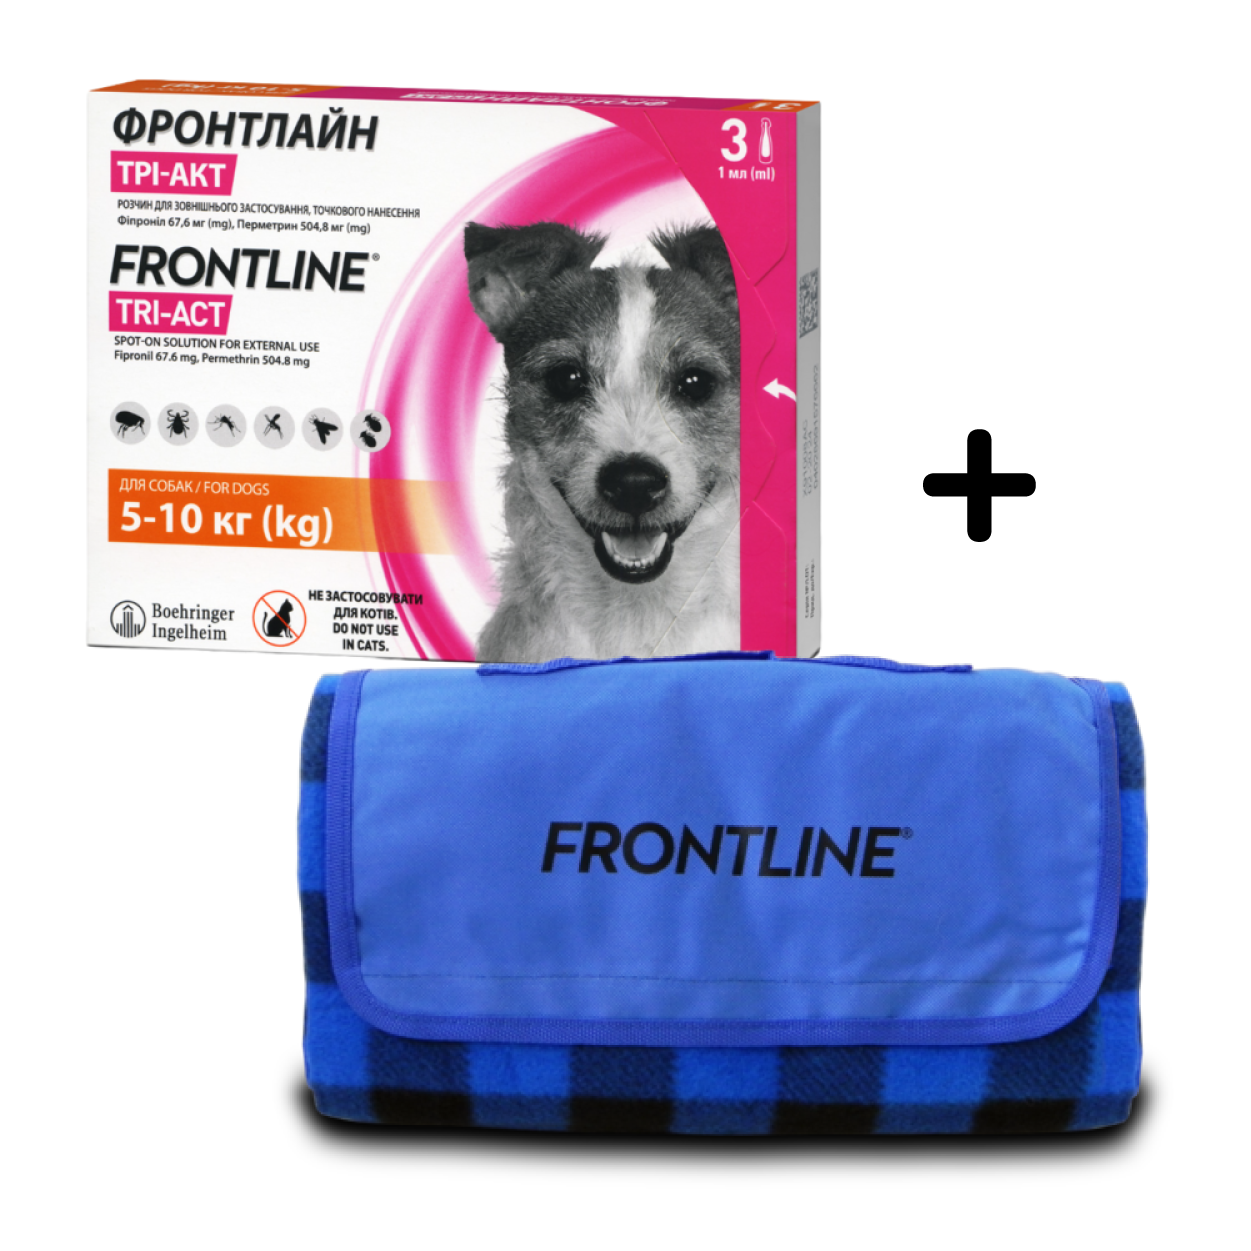 Капли Boehringer Ingelheim Frontline Tri-Act от блох и клещей для собак, 5-10 кг, 3 пипетки + Плед для пикника Frontline, темно-синий - фото 1